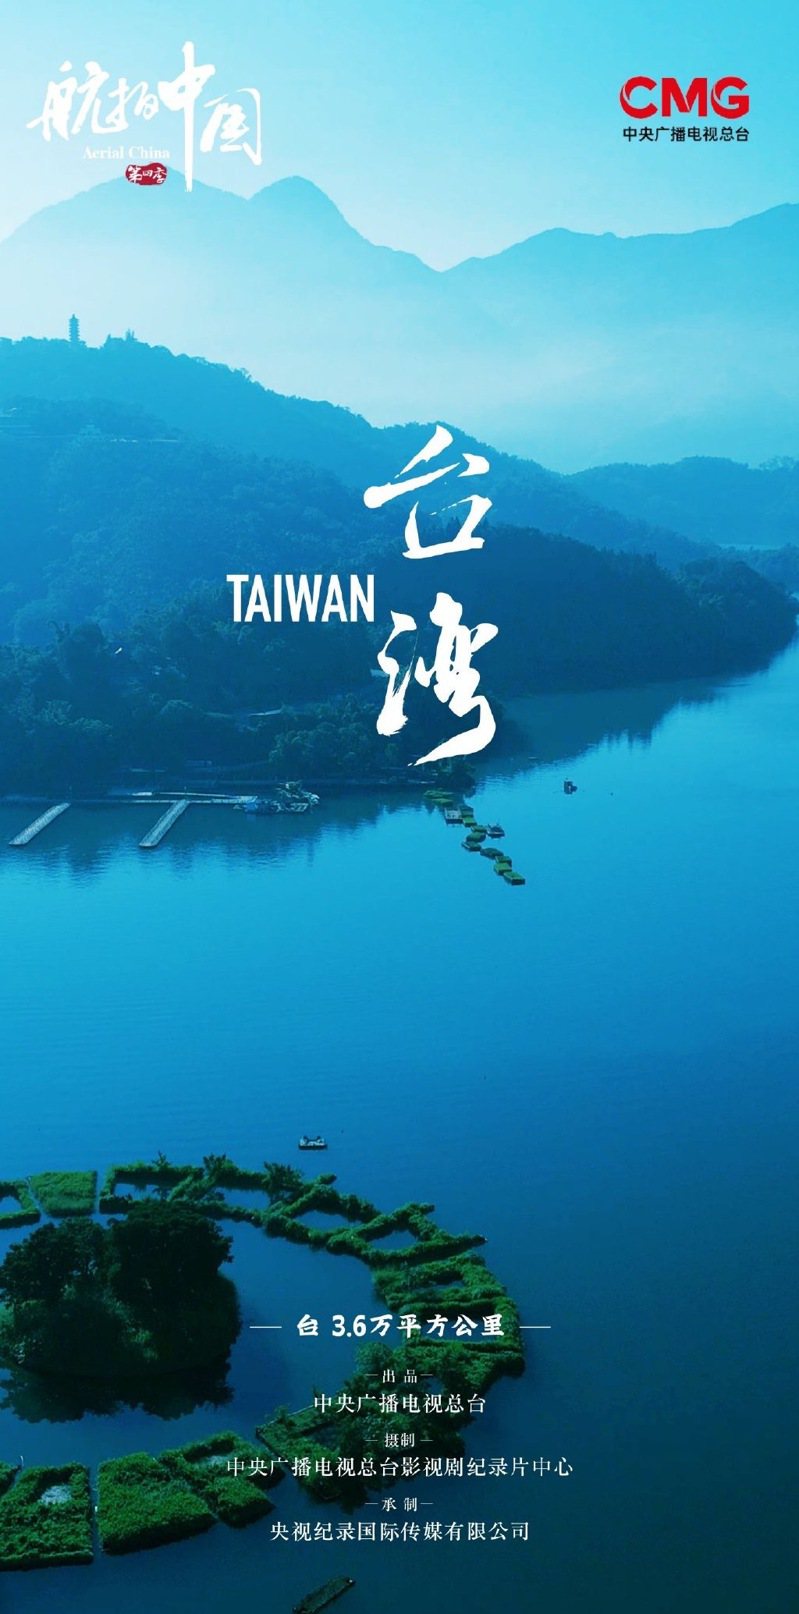 大陸央視空拍台灣的紀錄片首播，吸引不少大陸民眾觀看。取材自CCTV紀錄微信公眾號